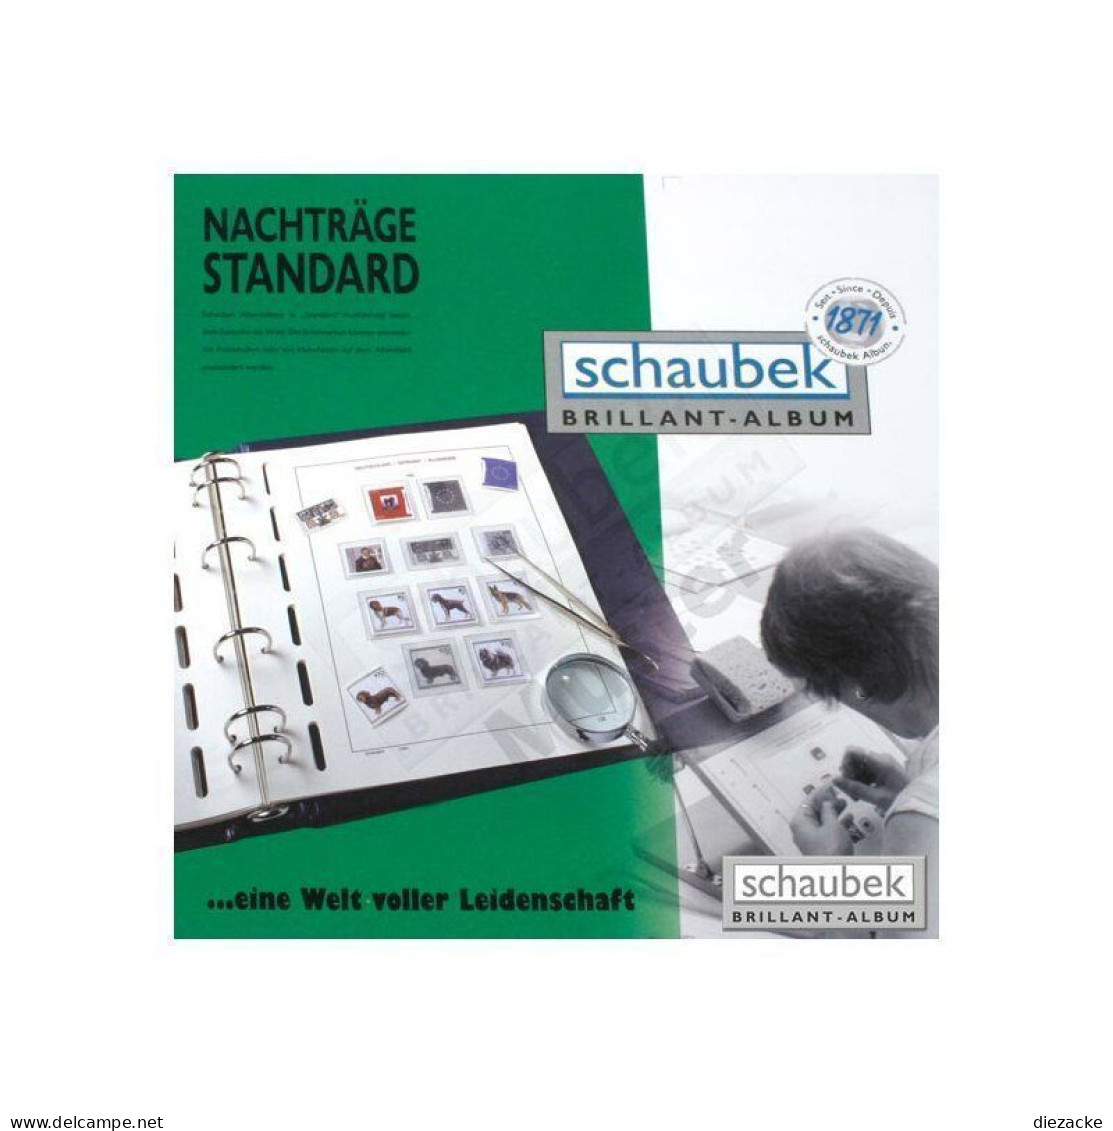 Schaubek Standard Tschechische Republik 2005-2009 Vordrucke 849T03N Neuware ( - Pre-printed Pages